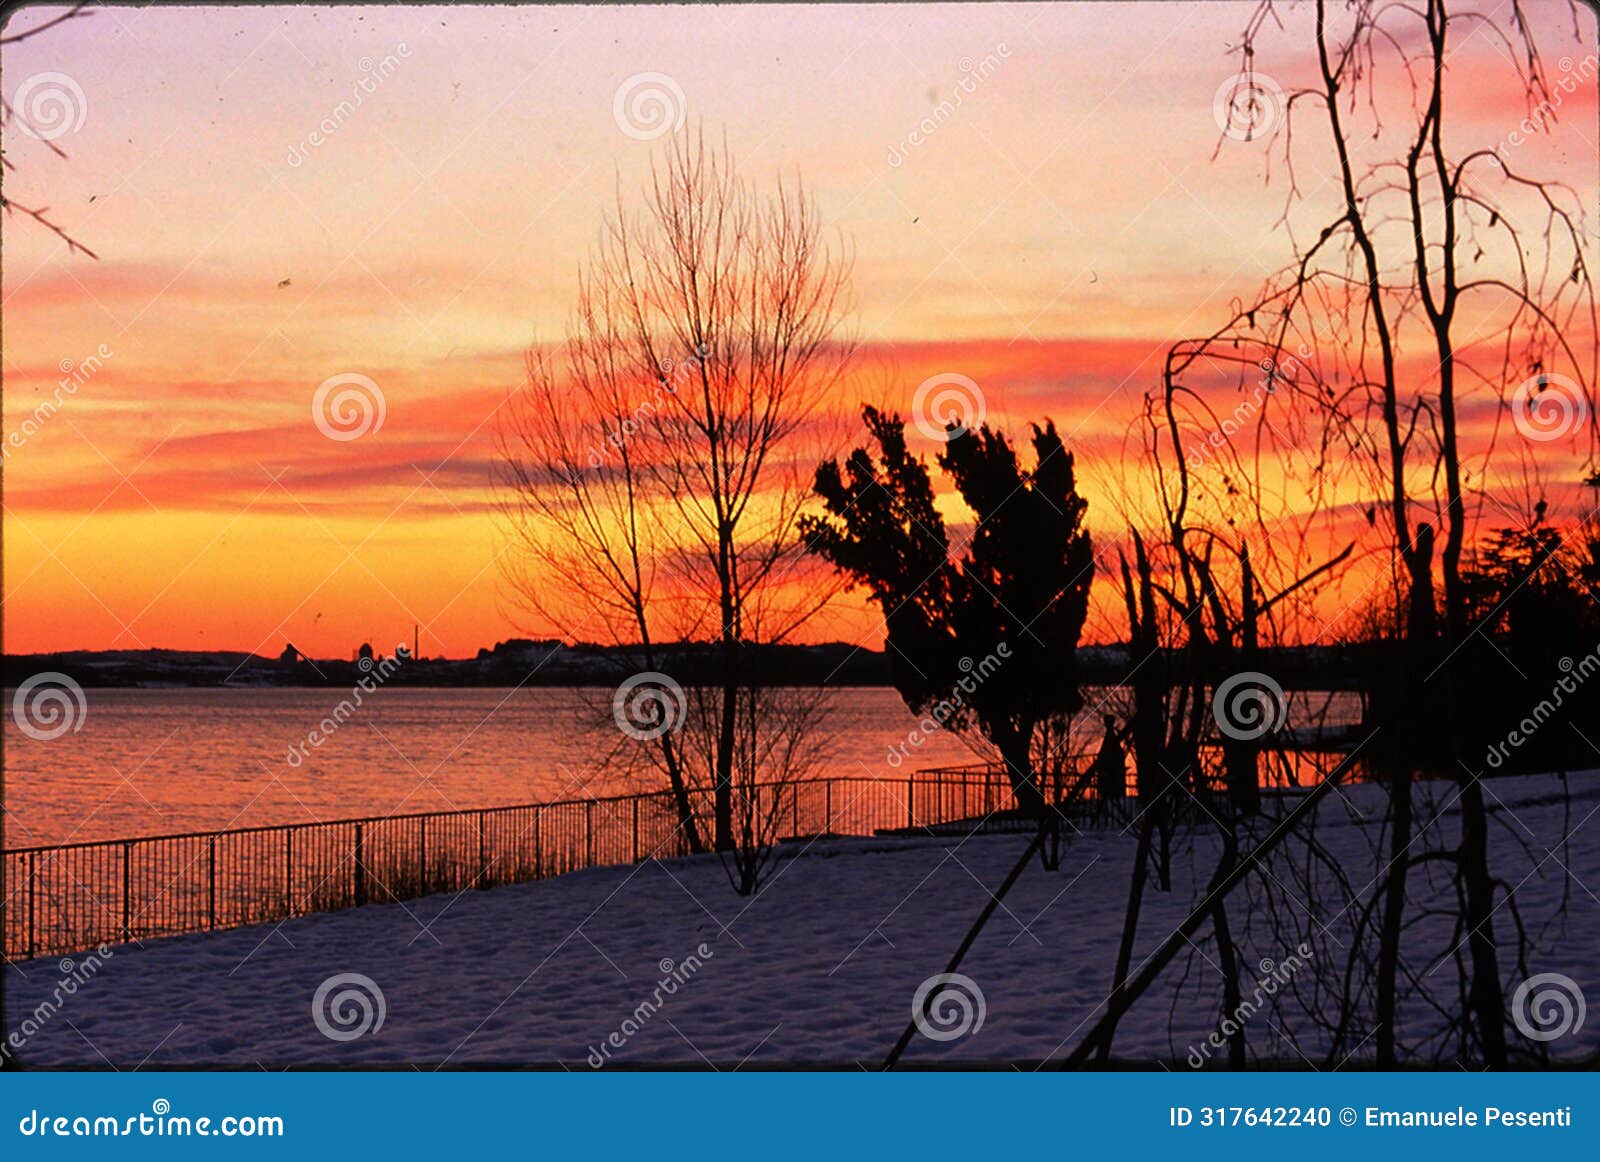 sunset on lake pusiano